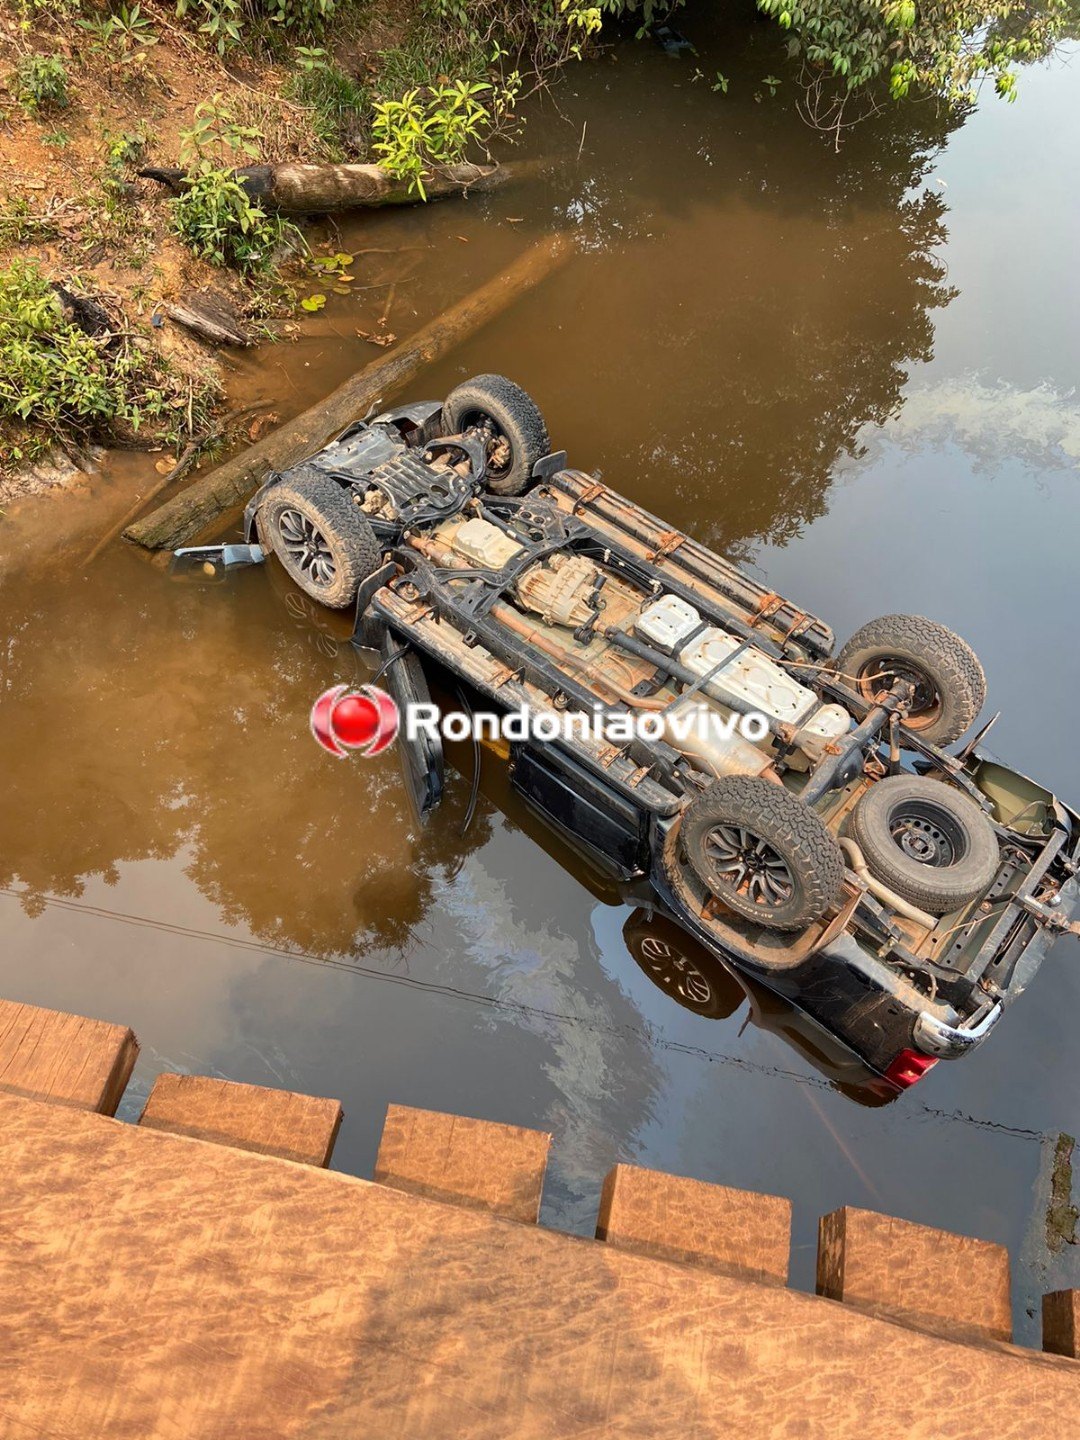 FATAL: Empresário de Rondônia morre após veículo cair de ponte no Amazonas 